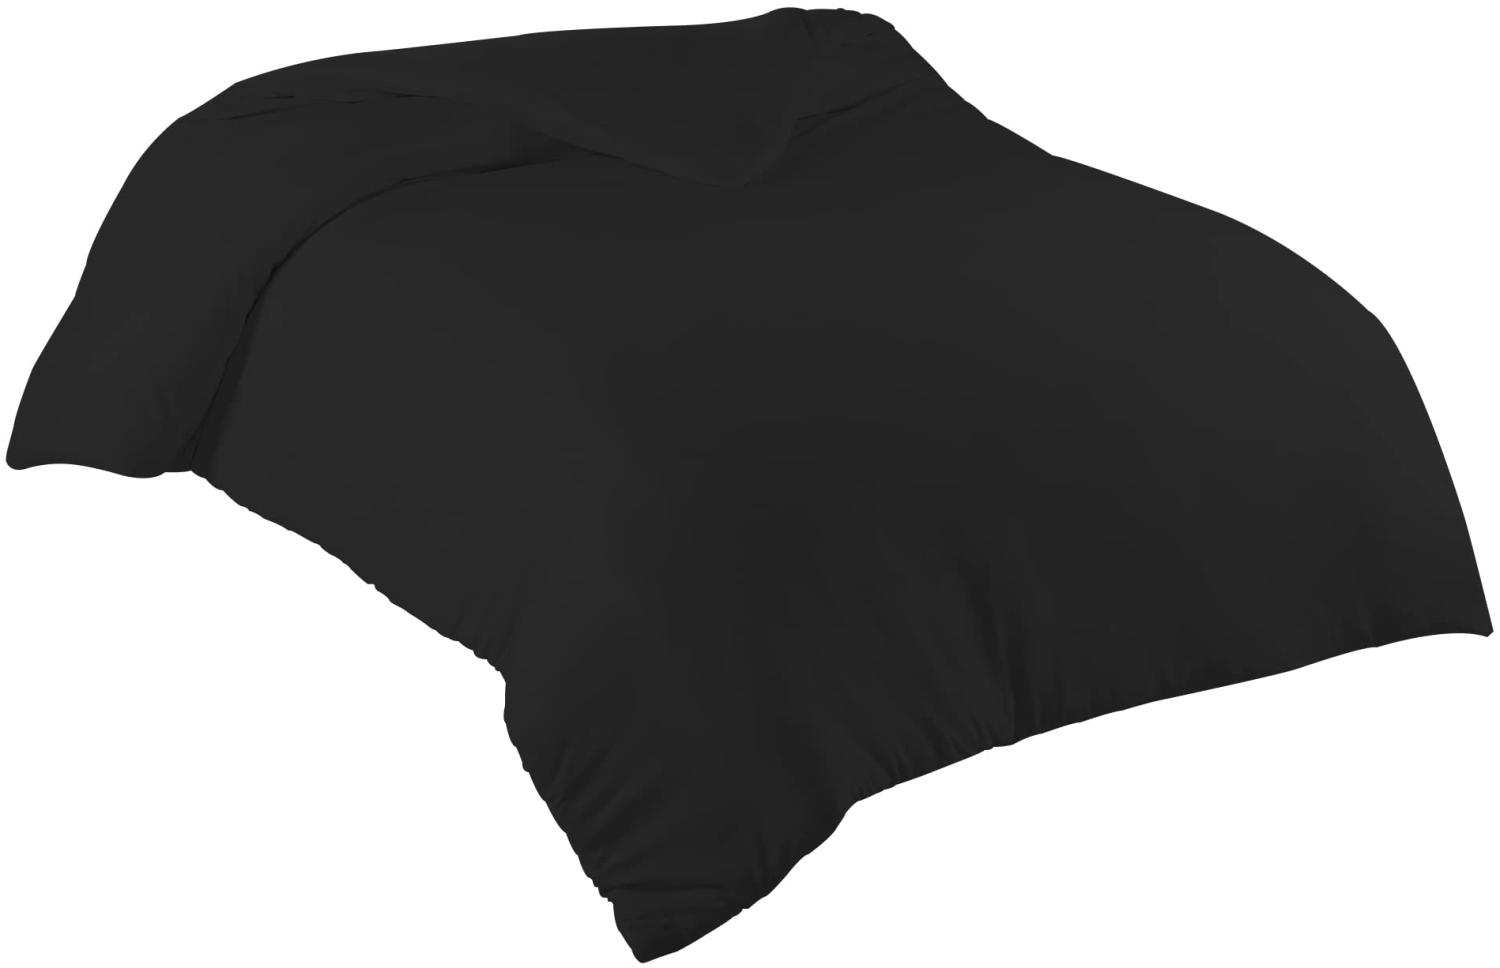 Livessa Bettbezug 200x200 cm mit Reißverschluss - Bettbezug 200x200 aus%100 Baumwolle Single-Jersey Stoff 140 g/m², Ultra weich und atmungsaktiv, Oeko-Tex Zertifiziert, 13 schöne Farben Bild 1